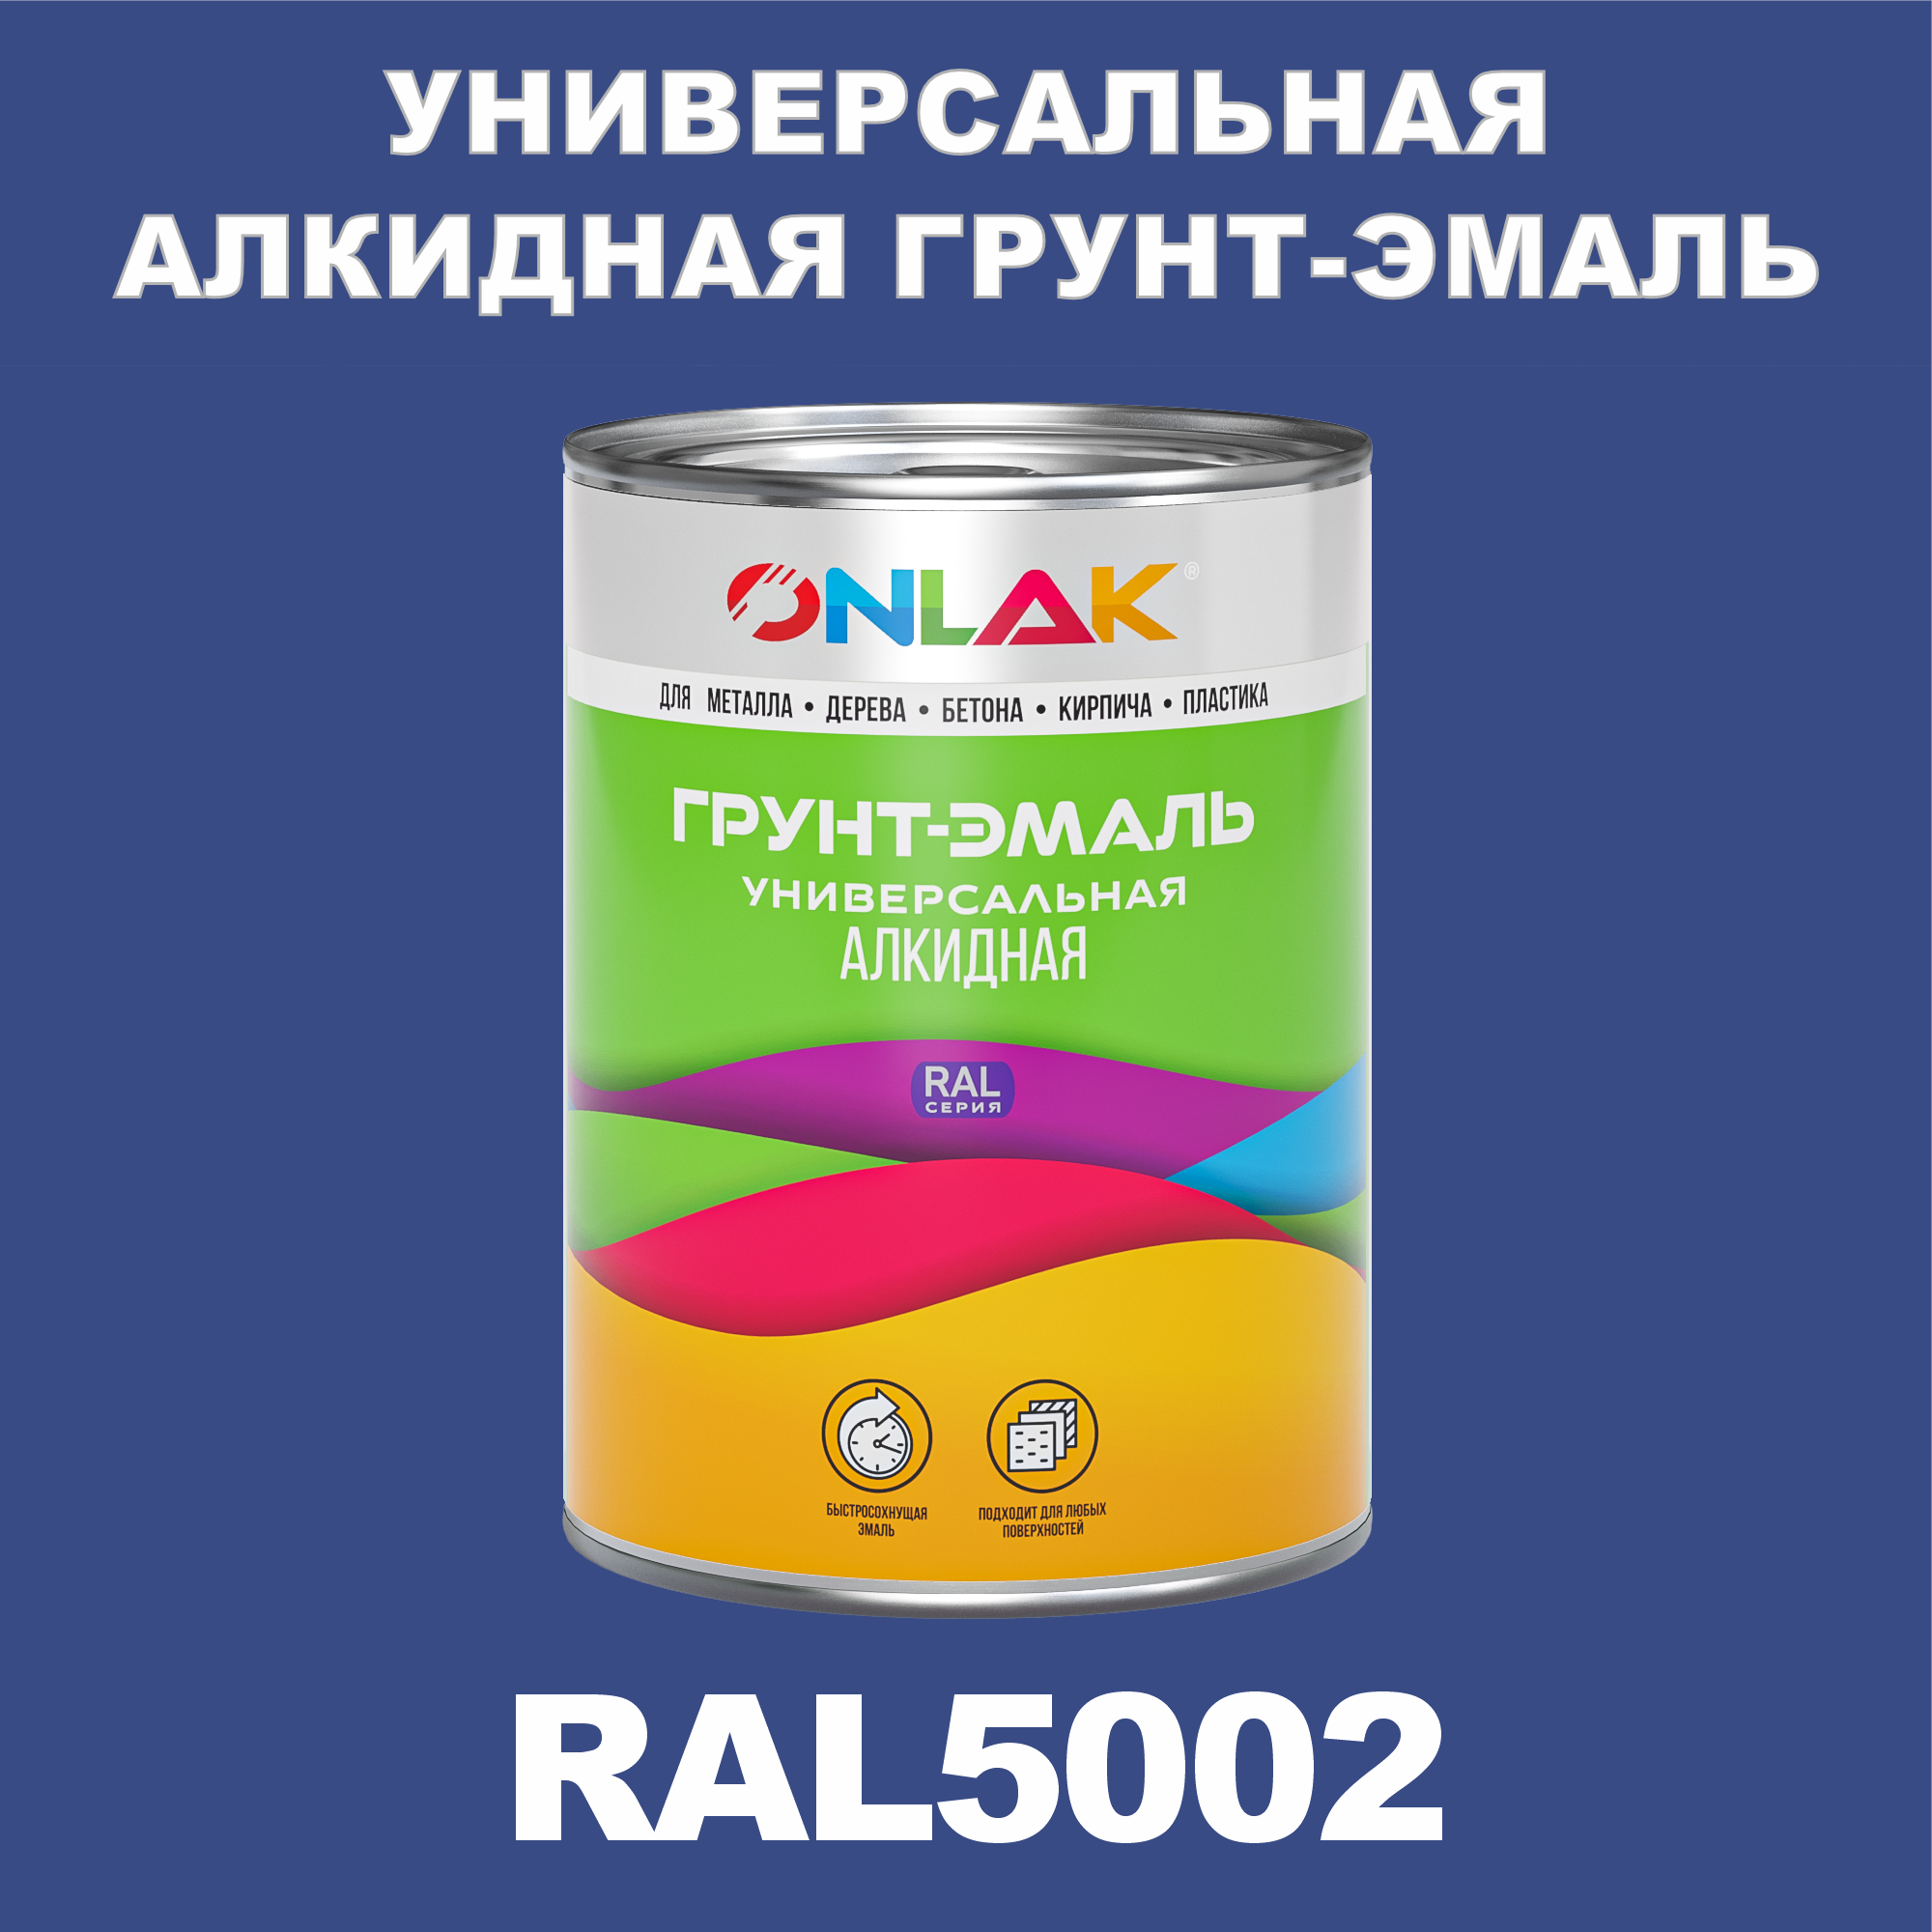 Грунт-эмаль ONLAK 1К RAL5002 антикоррозионная алкидная по металлу по ржавчине 1 кг грунт эмаль yollo по ржавчине алкидная серая 0 9 кг